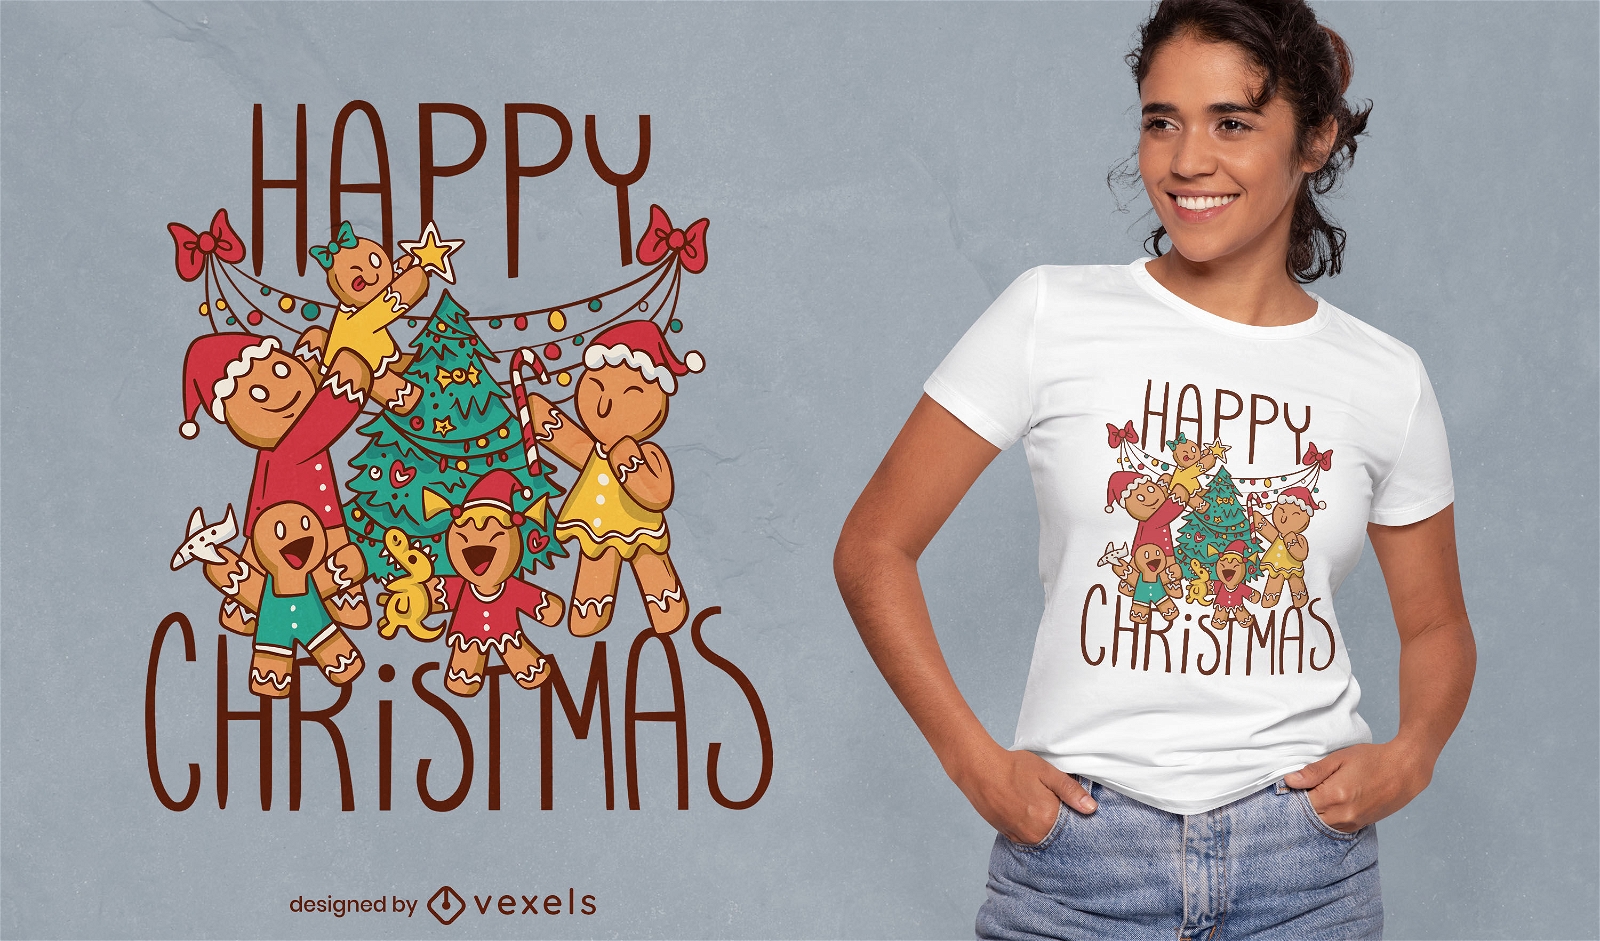 Diseño de camiseta navideña de galletas de jengibre.